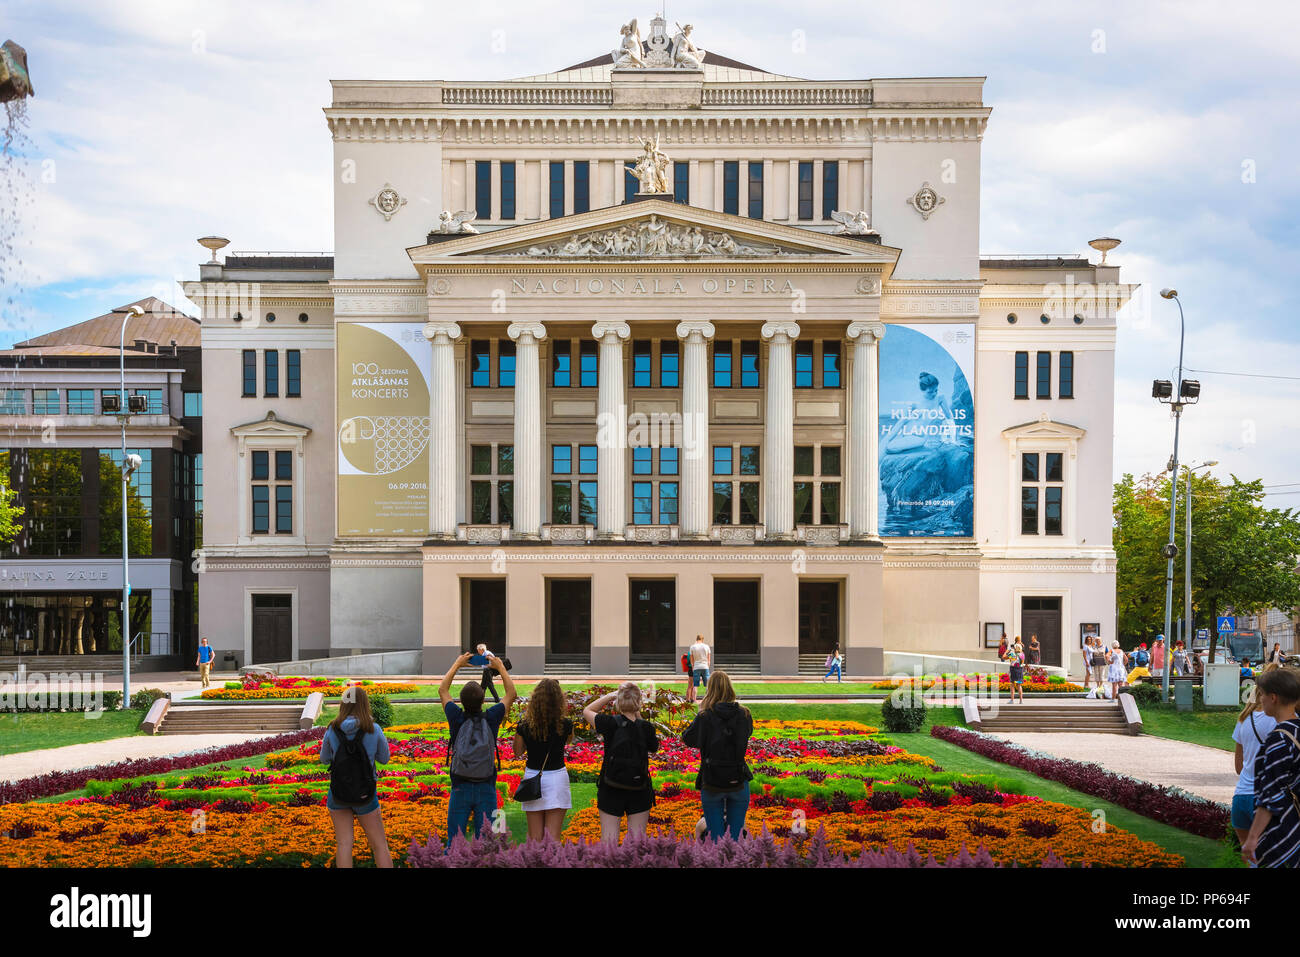 Riga Opera House, Rückansicht der Touristen in der Strulaka Park und Garten fotografieren der Rigaer Oper Gebäude mit Smartphones, Lettland. Stockfoto